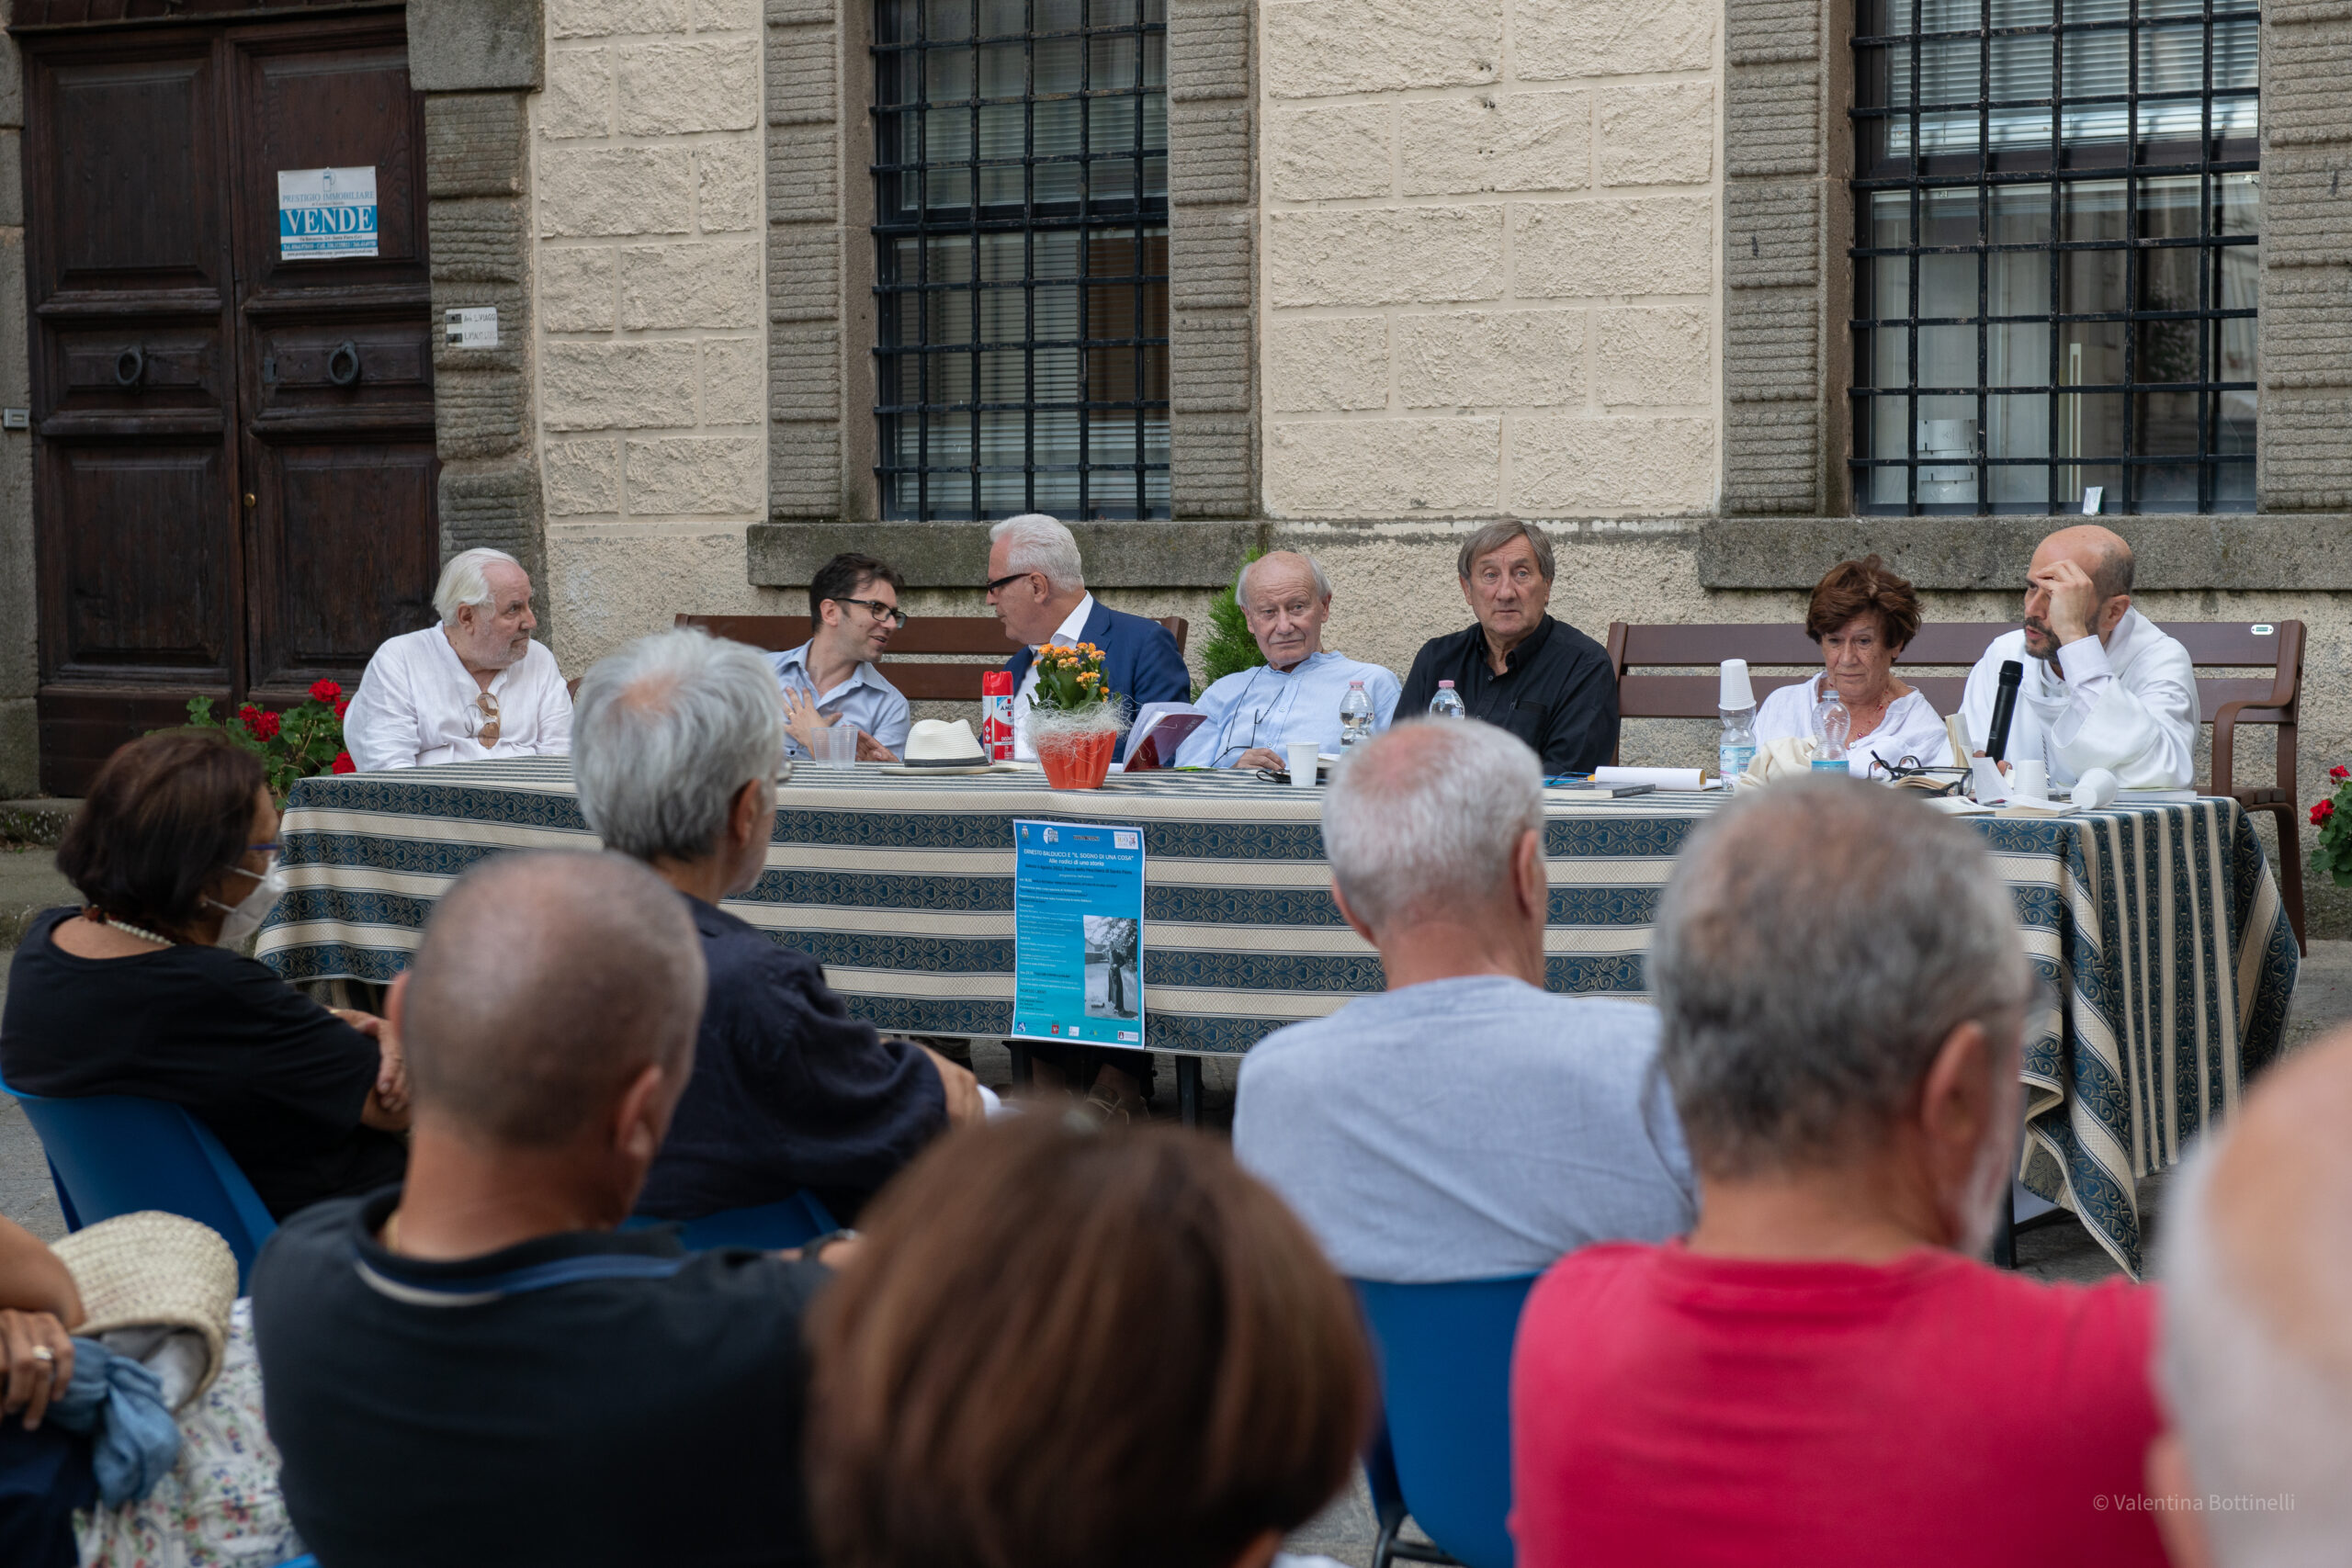 6 agosto – 100 anni di Balducci a Santa Fiora tra tavola rotonda e concerto